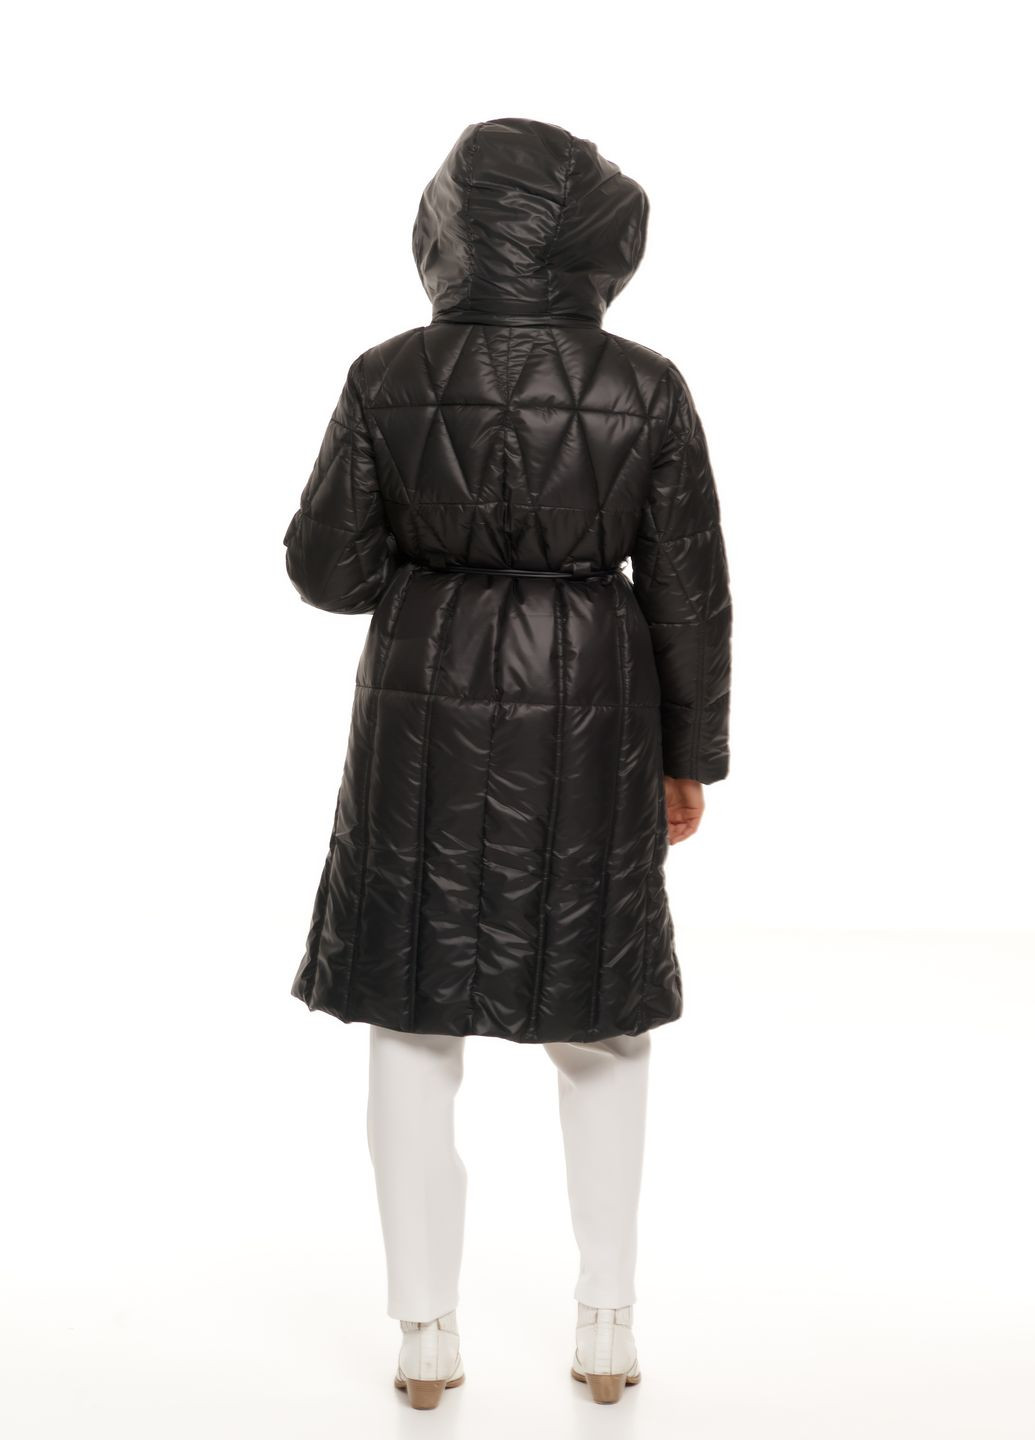 Черная зимняя женский удлиненный пуховик с капюшоном натуральный водоотталкивающий пух зима осень 985 черный Actors